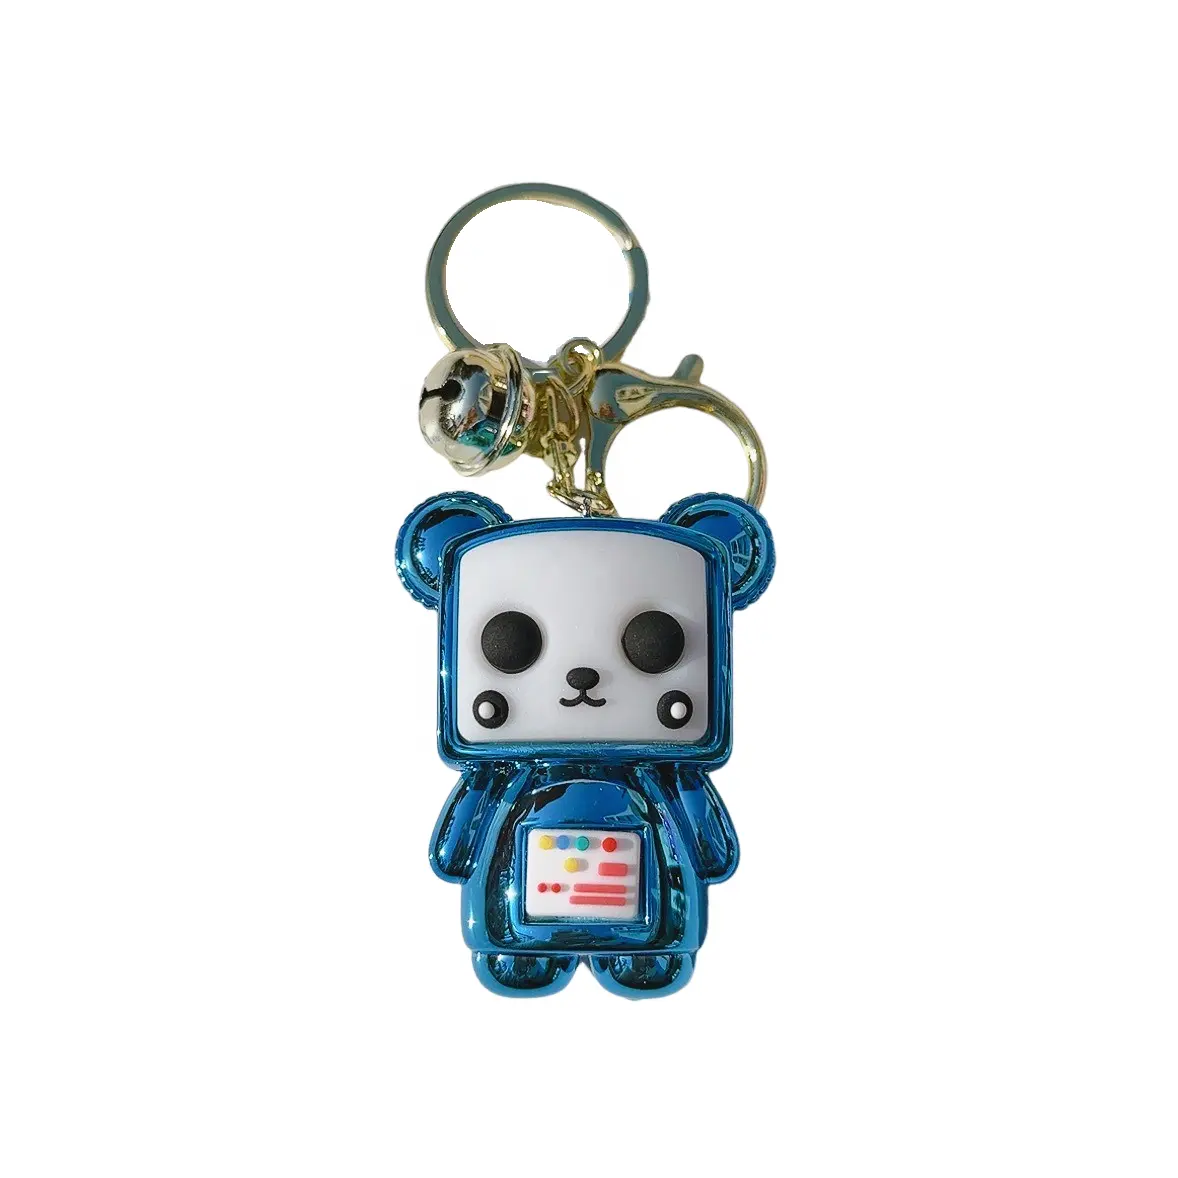 Bán Buôn Sáng Tạo Dễ Thương Kawaii Panda Búp Bê Móc Chìa Khóa Tinh Tế Xe Mặt Dây Chuyền Keychain Phụ Kiện Món Quà Nhỏ Nhựa Móc Chìa Khóa